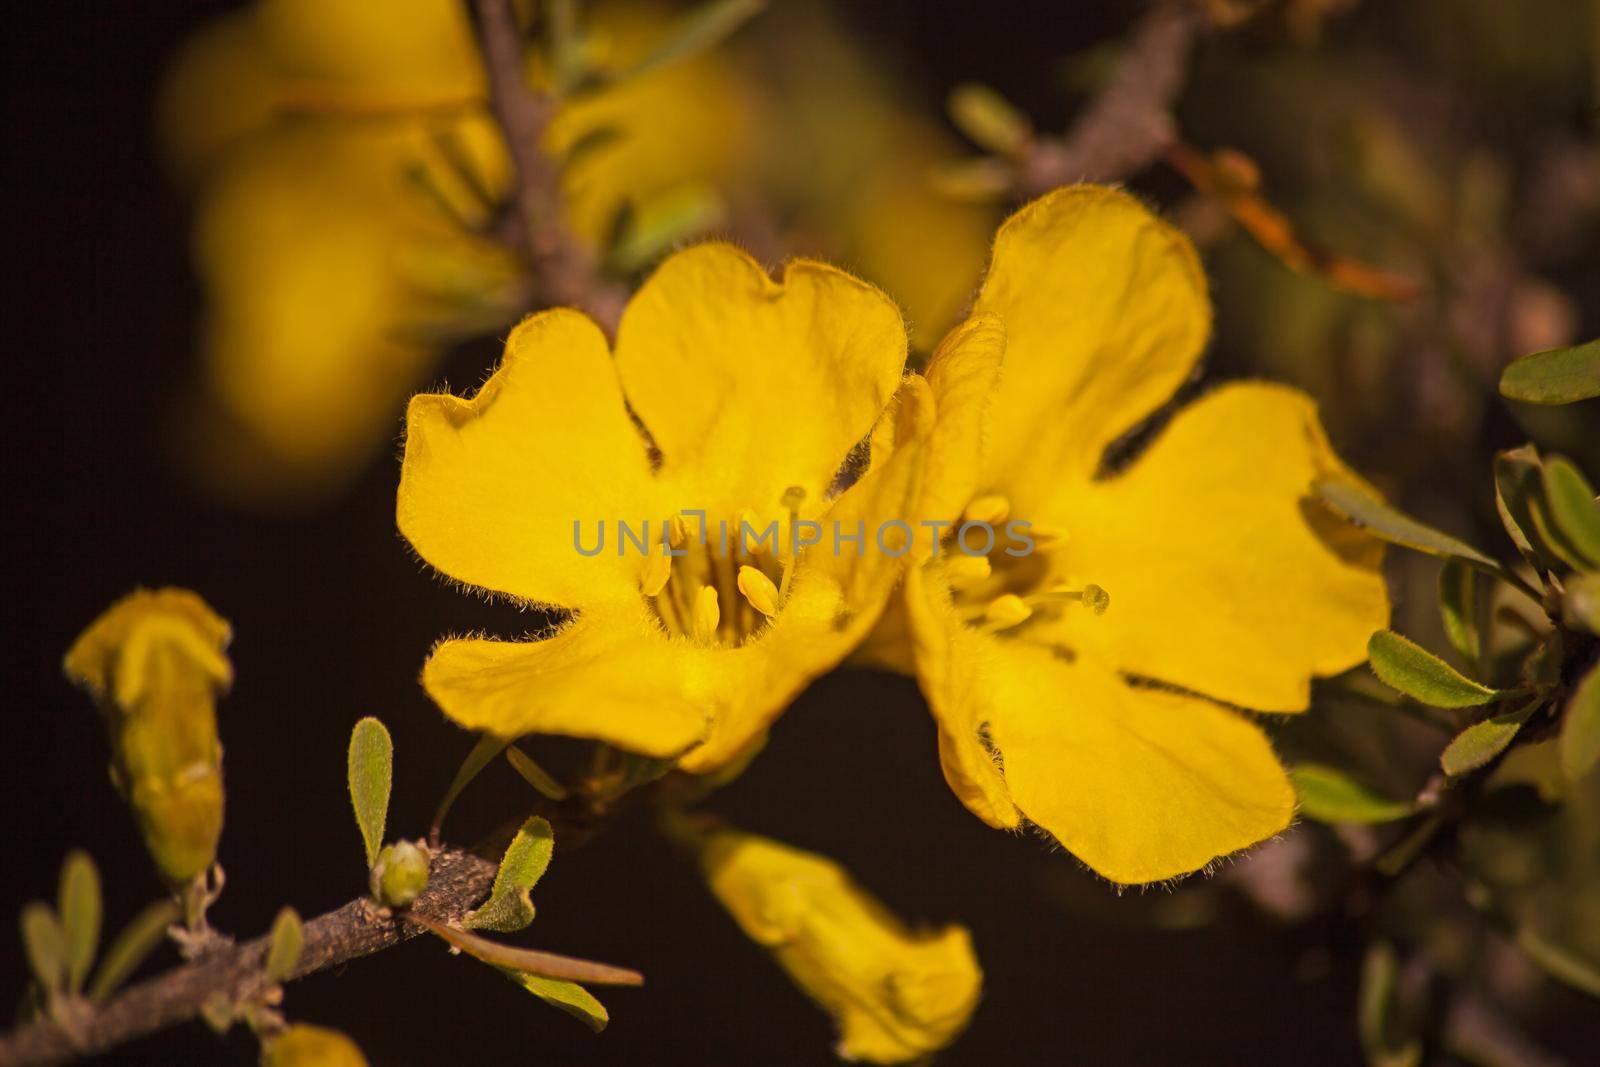 Flowers of the Karoo Gold Rhigozum obovatum Burch 14653 by kobus_peche